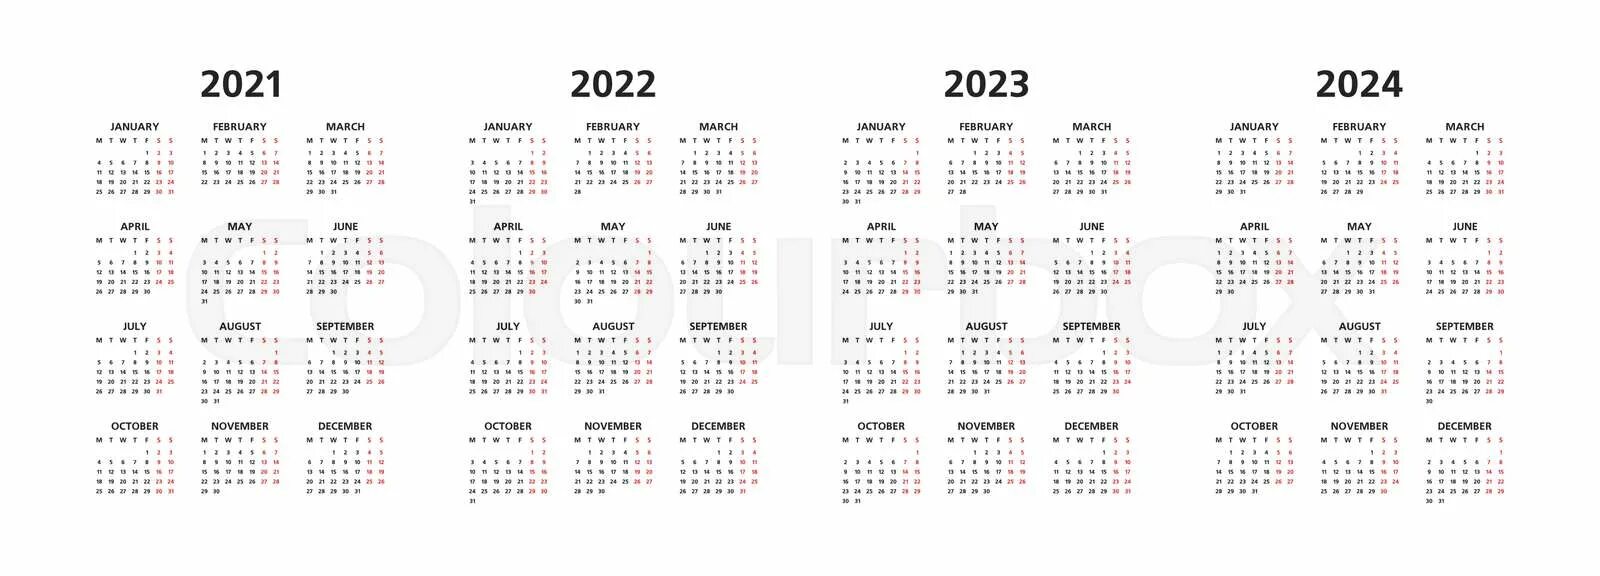 Календарь на 2023-2024 годы. Календарики на 2023 и 2024 года. Календарь 2021 2022 2023 2024. Календарик на 2024 год. Когда переведут время в европе в 2024